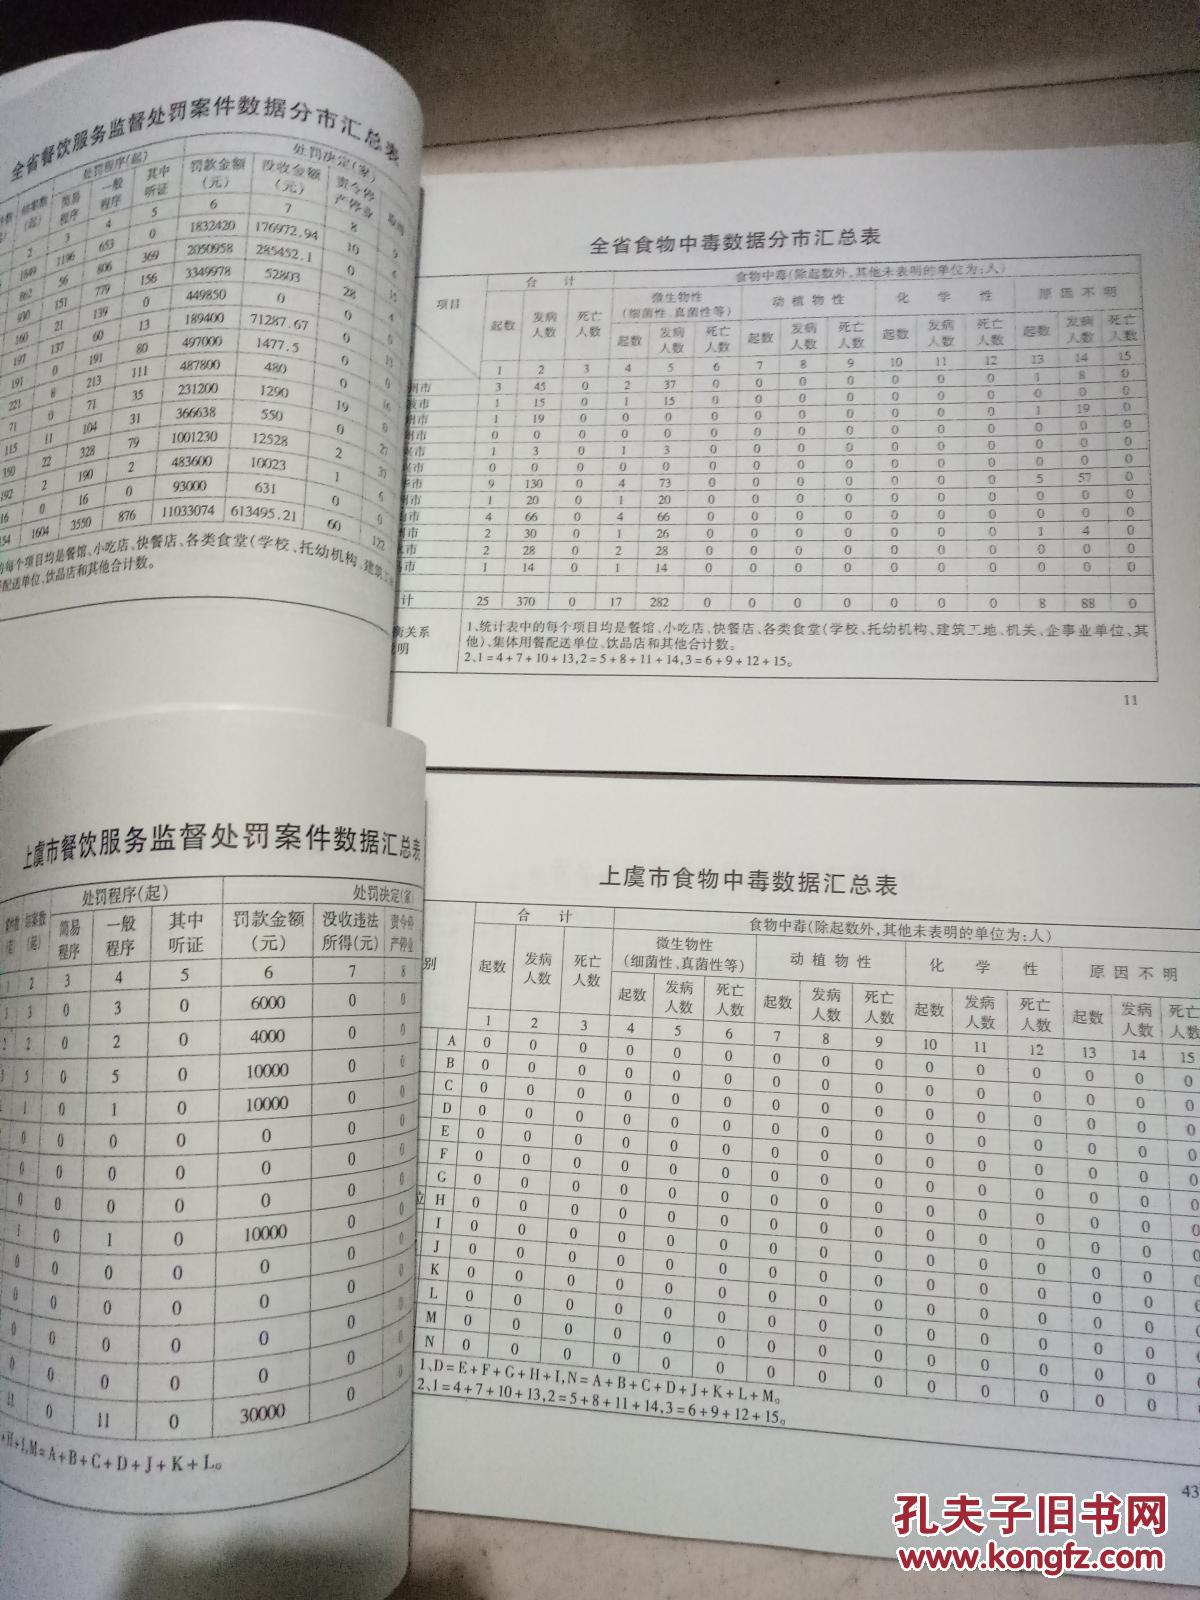 浙江省餐饮服务监管数据统计汇编2010年度上下册